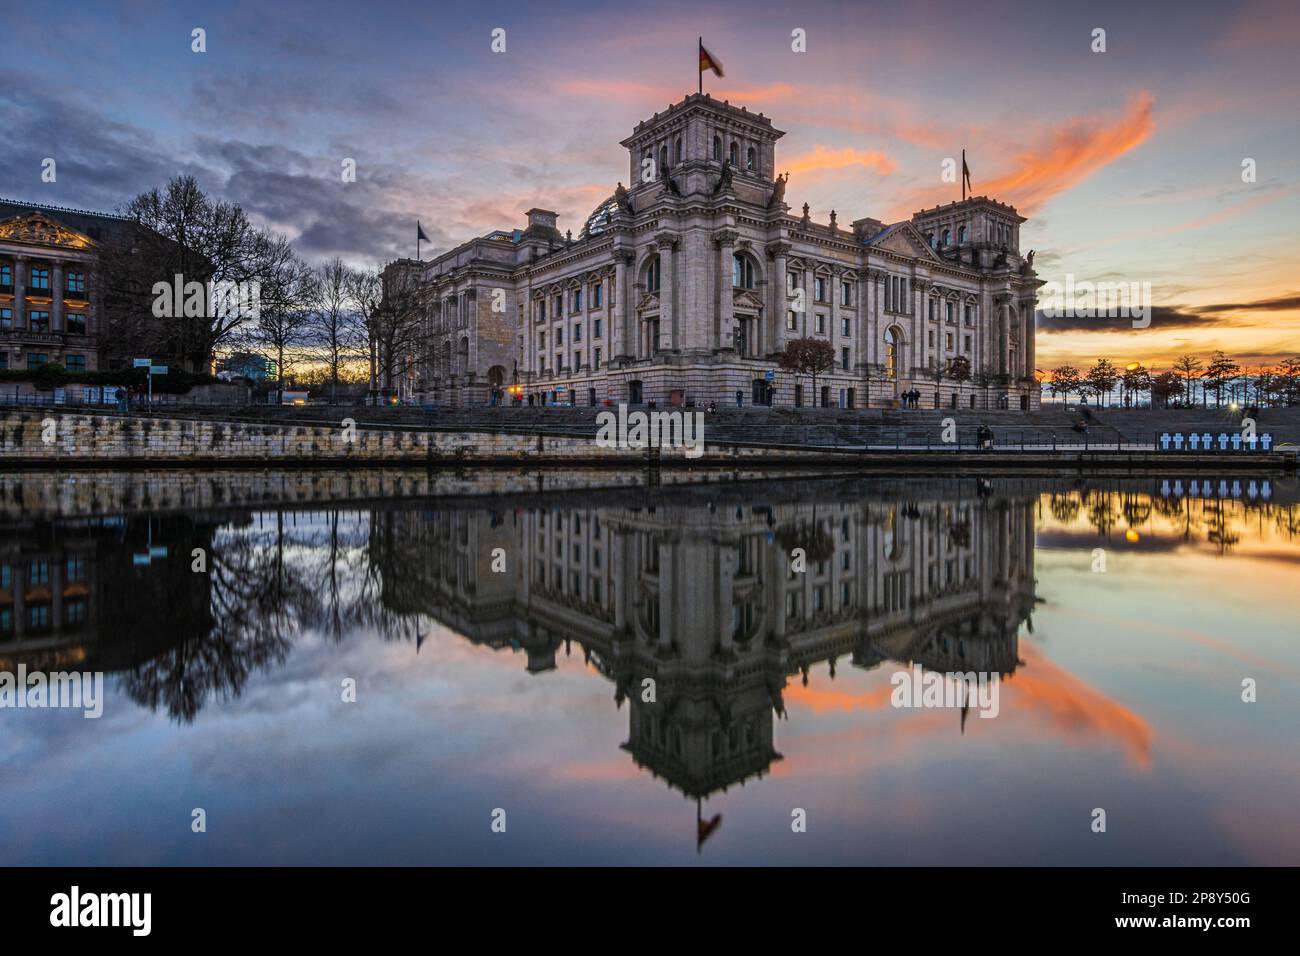 Blick auf das parlamentsgebäude in Berlin. Regierung in Deutschland am Platz der Republik. Spree mit Sonnenuntergangsreflexion. Beleuchtetes Gebäude Stockfoto